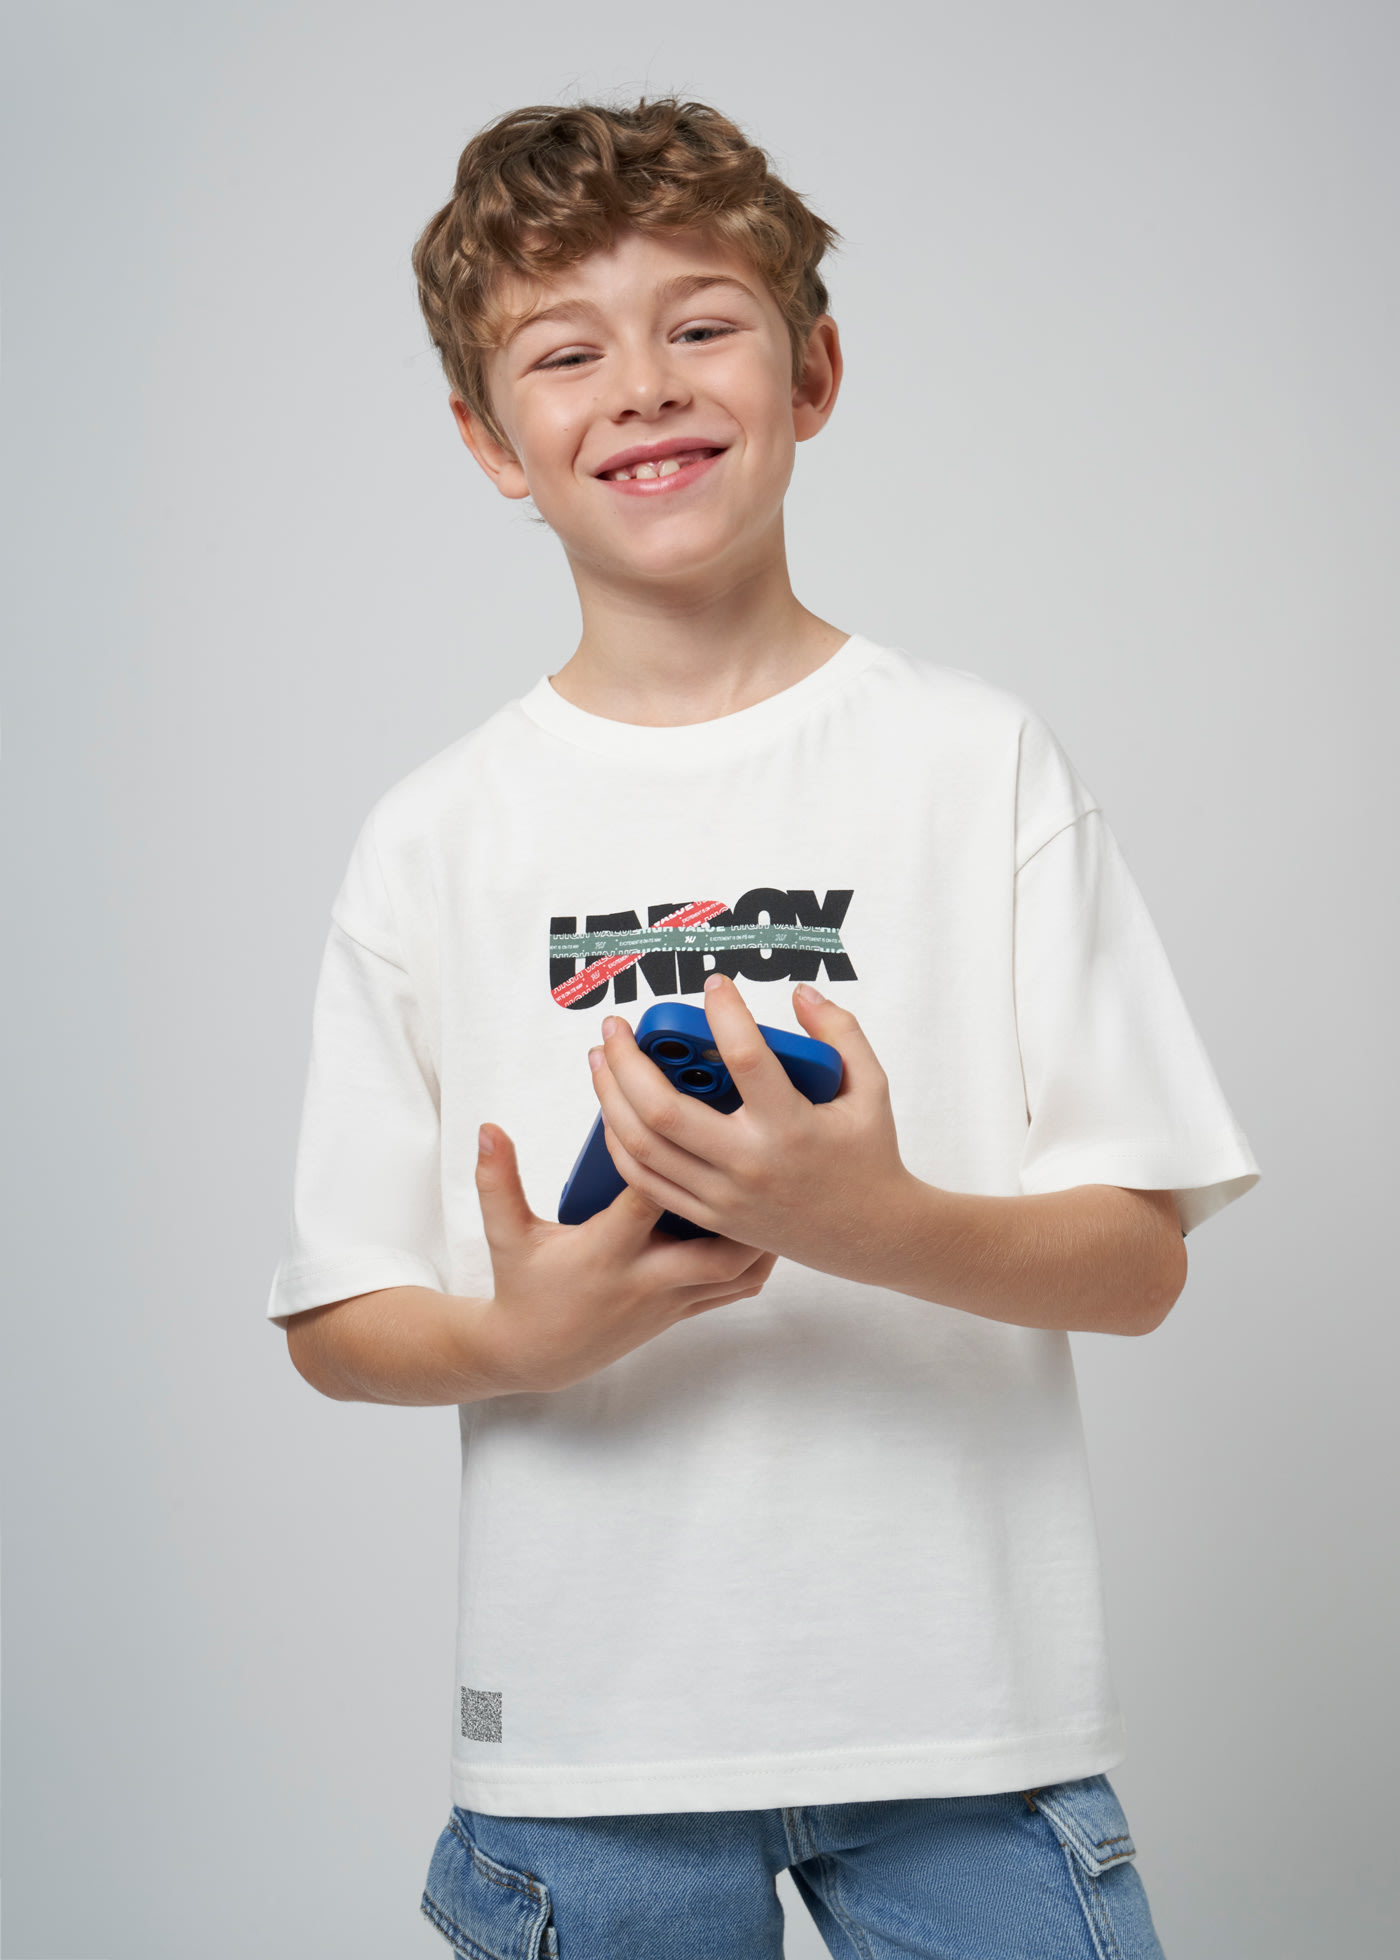 T-Shirt Interaktiv QR Better Cotton Teenager Jungen